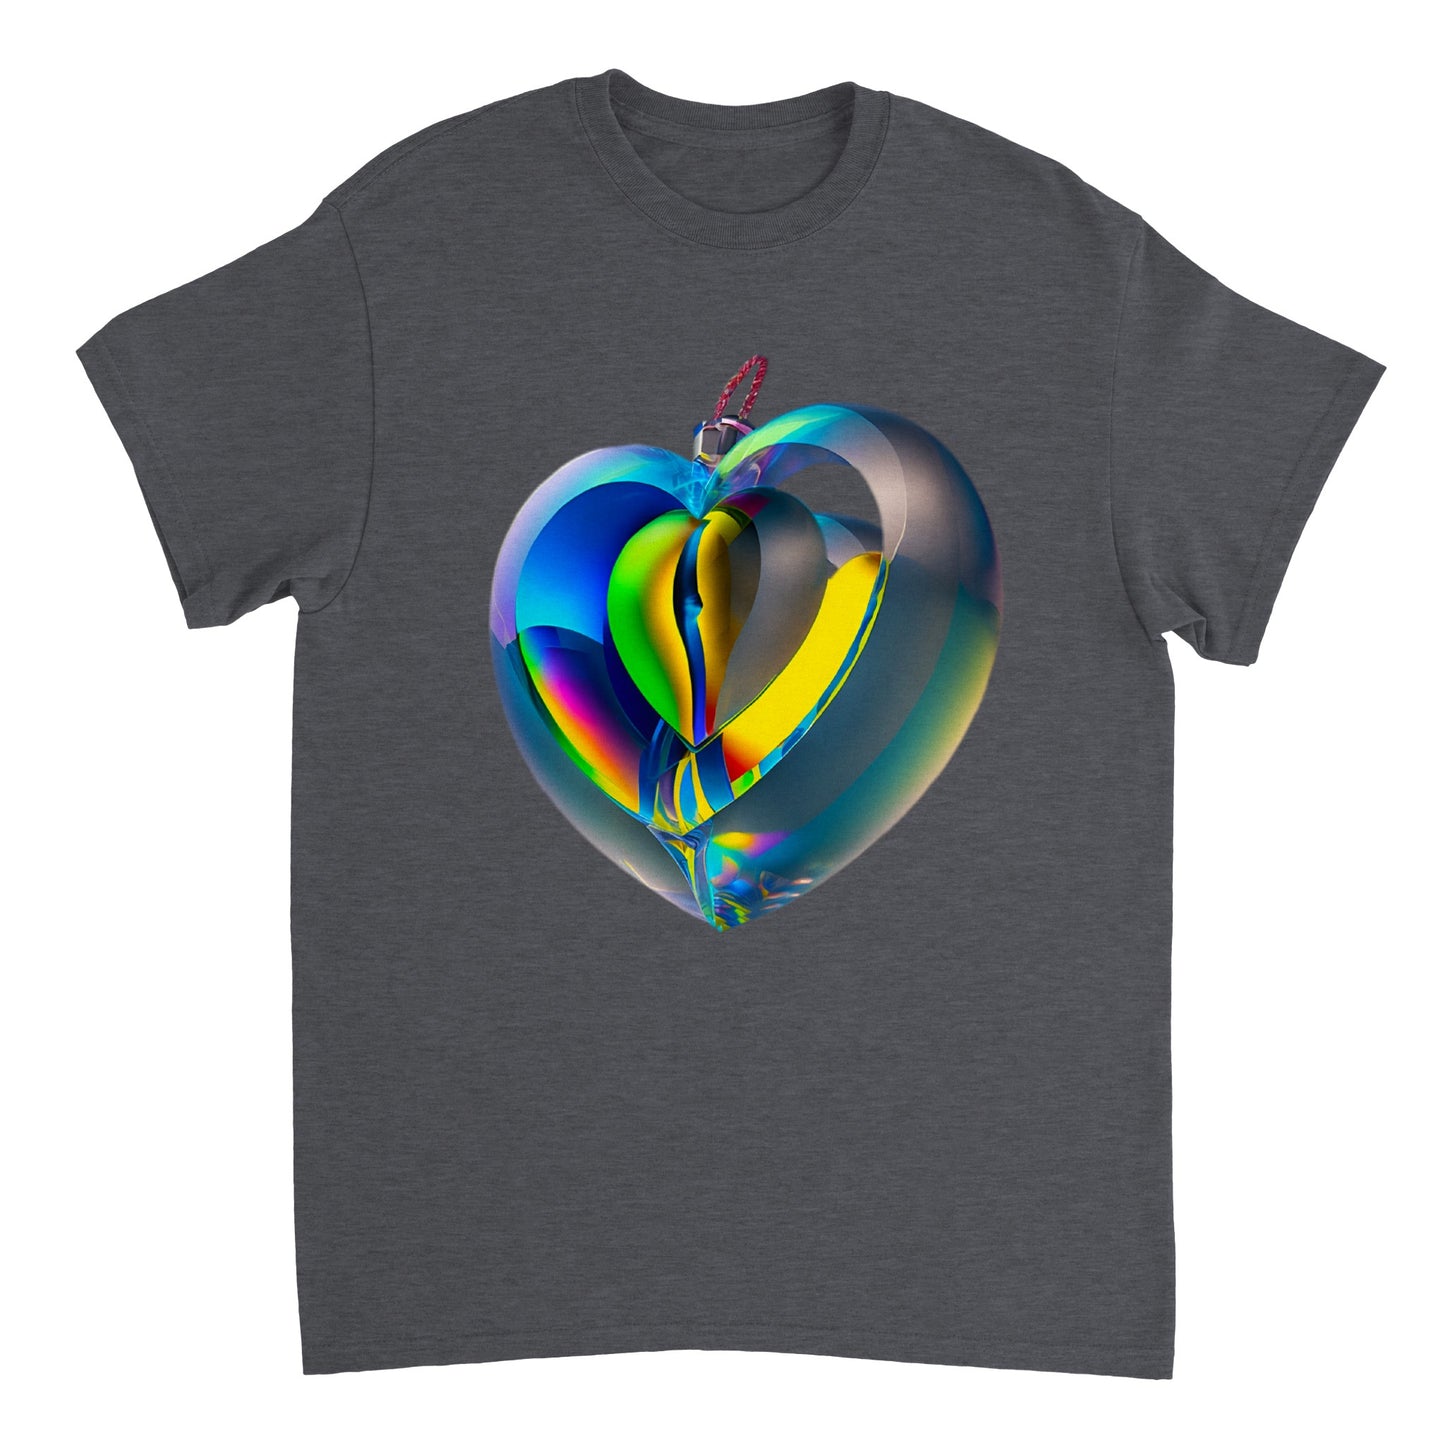 Love Heart - Heavyweight Unisex Crewneck T-shirt 66